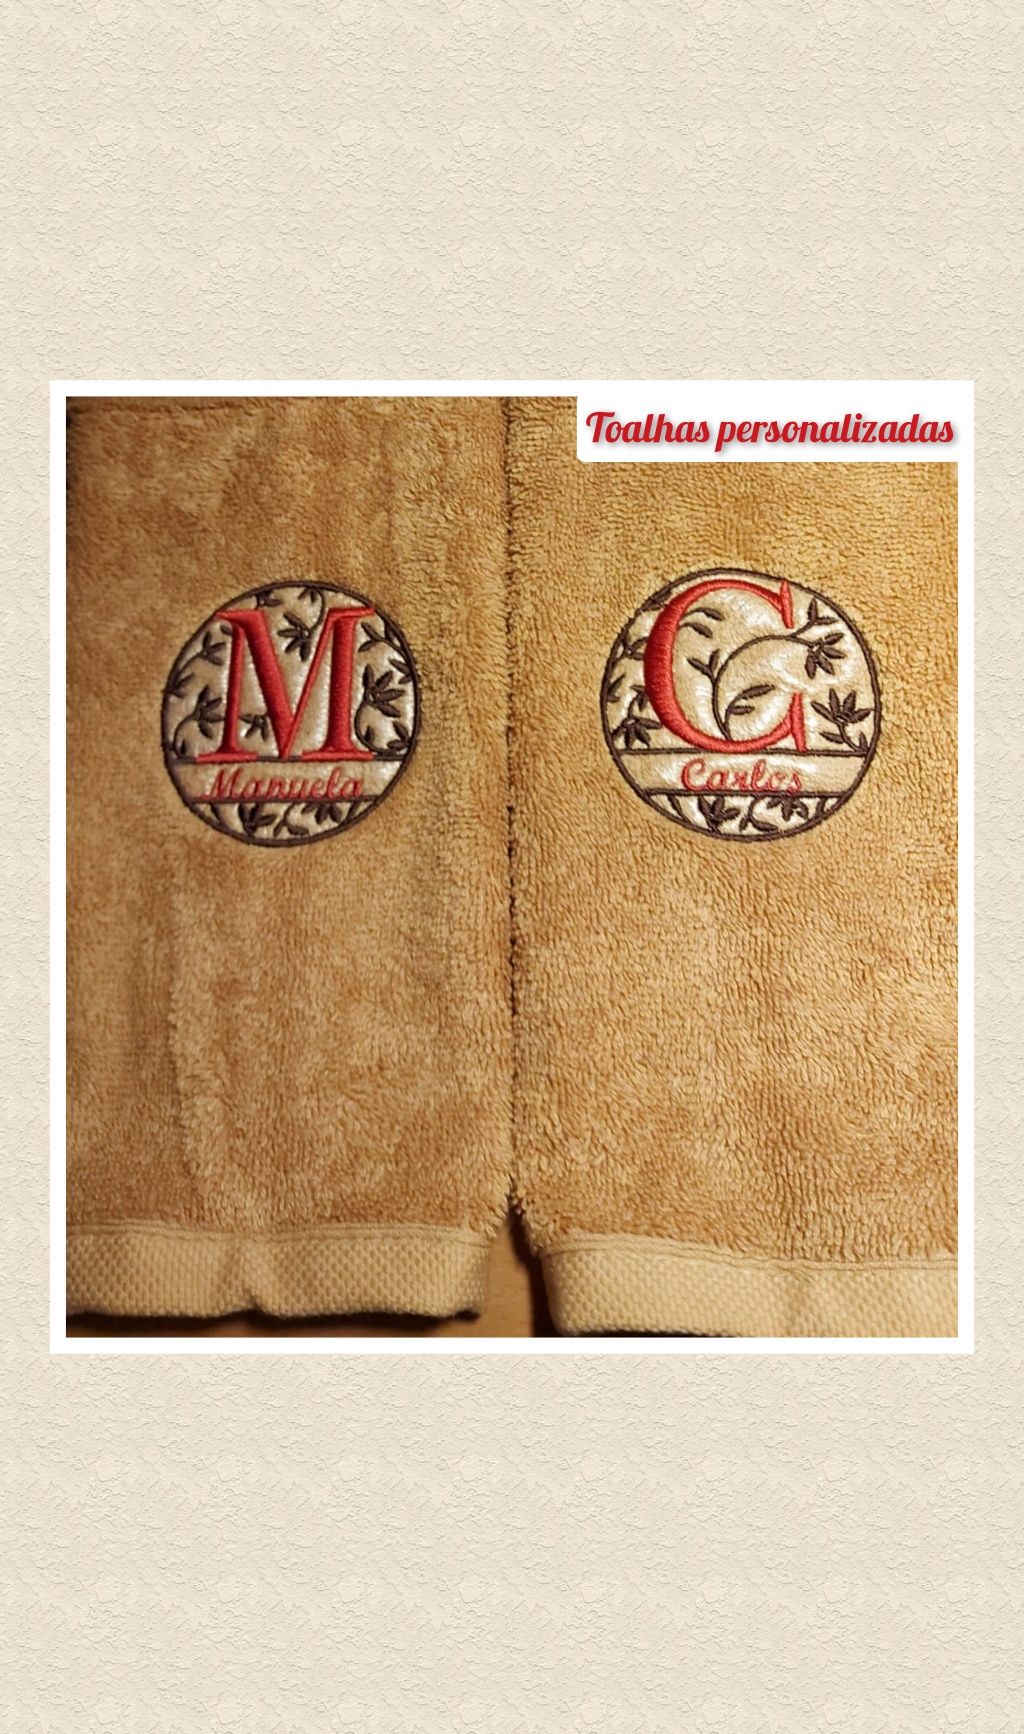 Bordados personalizados em toalhas